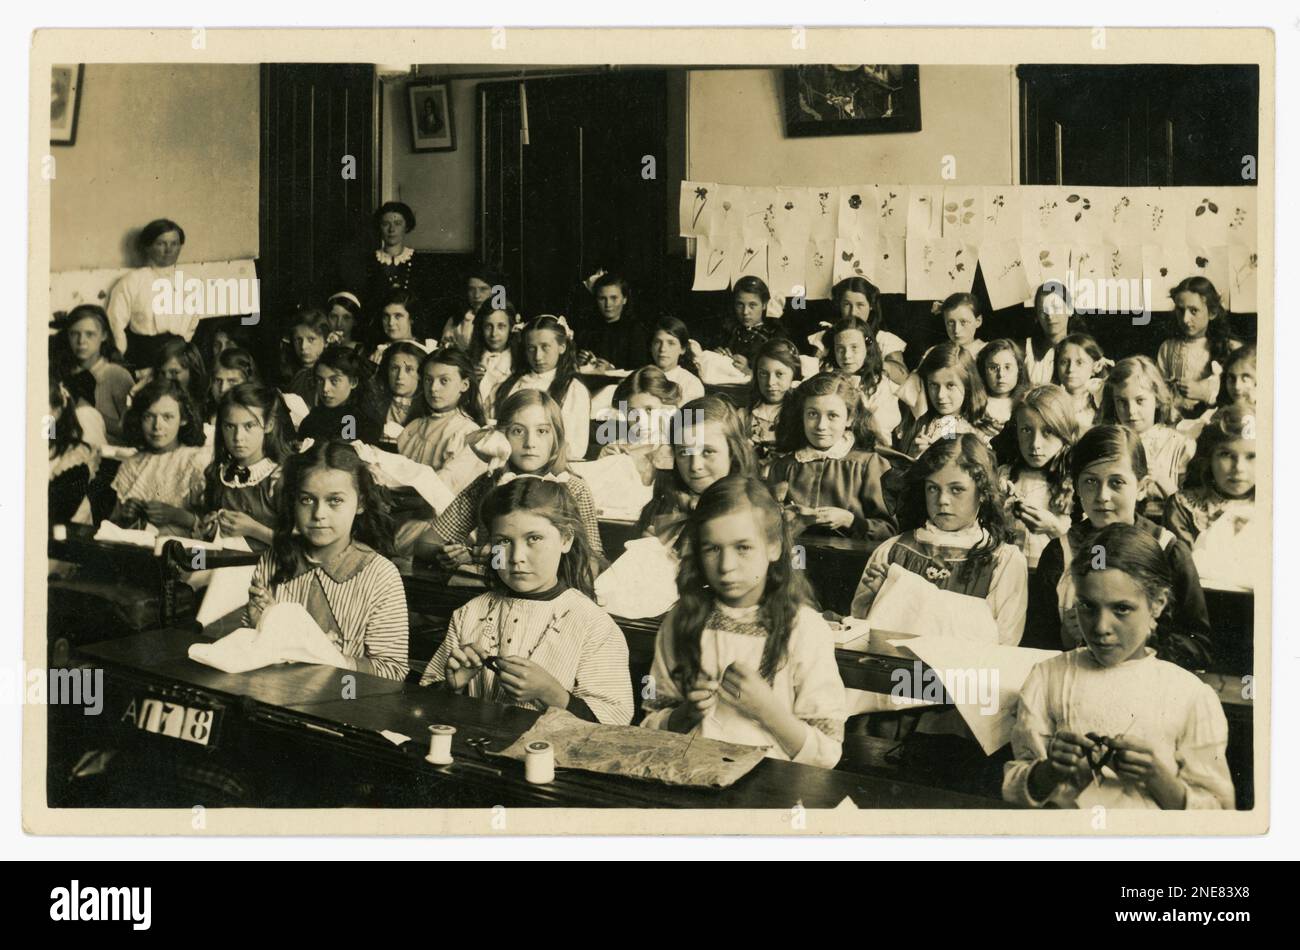 Carte postale originale et claire de WW1 ans de jeunes filles d'école dans une classe de couture, avec des échantillonneurs, peut-être la pratique de la broderie, certains sont tricoter, beaucoup de caractères. Pas d'uniformes. Dessins de la nature sur le mur. Deux enseignantes regardent. Du studio de J.& G Taylor, Green Lane, N. London, Royaume-Uni Vers 1913-1919. Banque D'Images